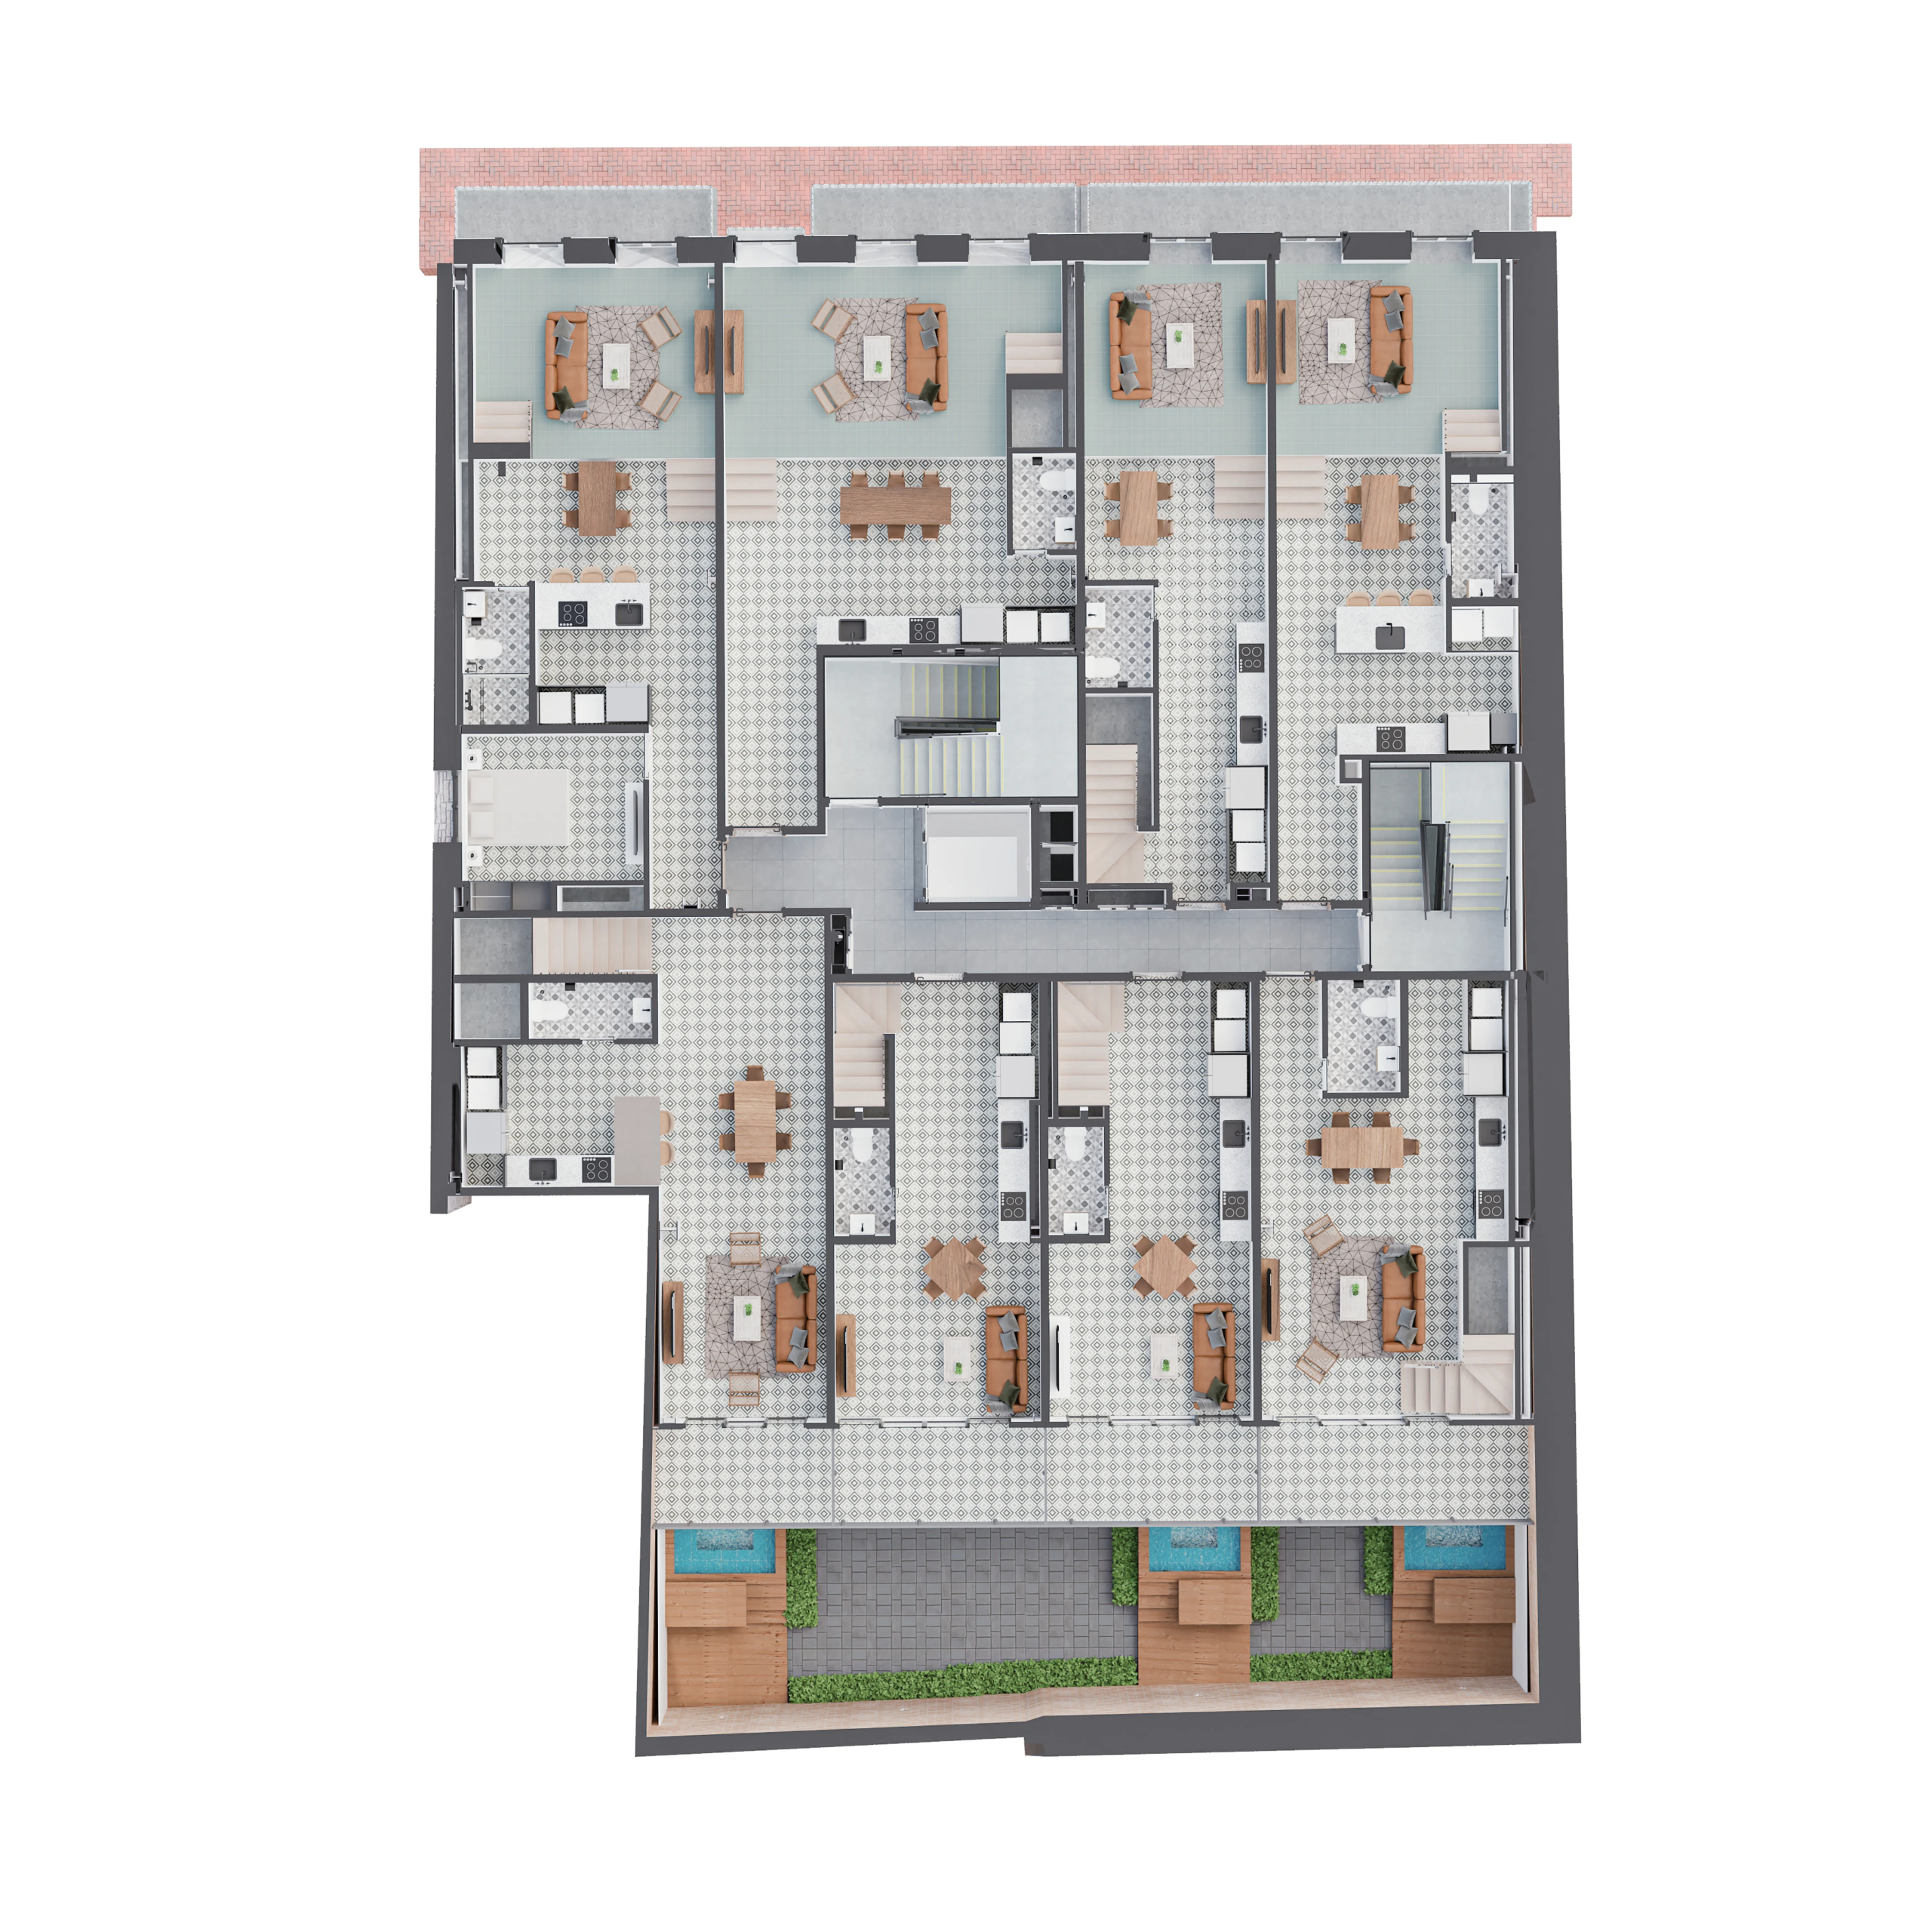 Casa Variedades floor plan level 1